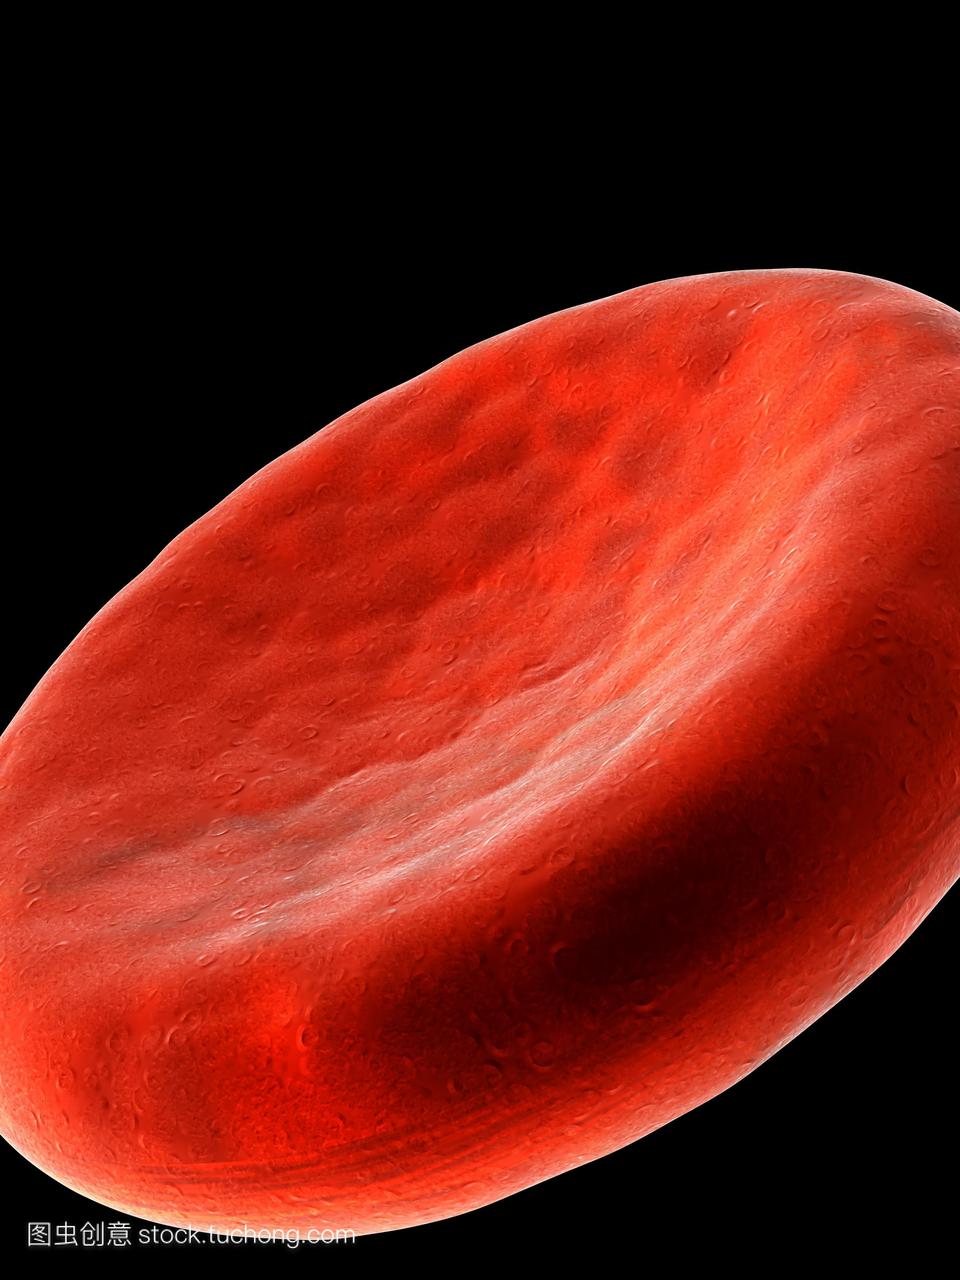 红细胞电脑绘图。红血球红细胞的特写,显示其